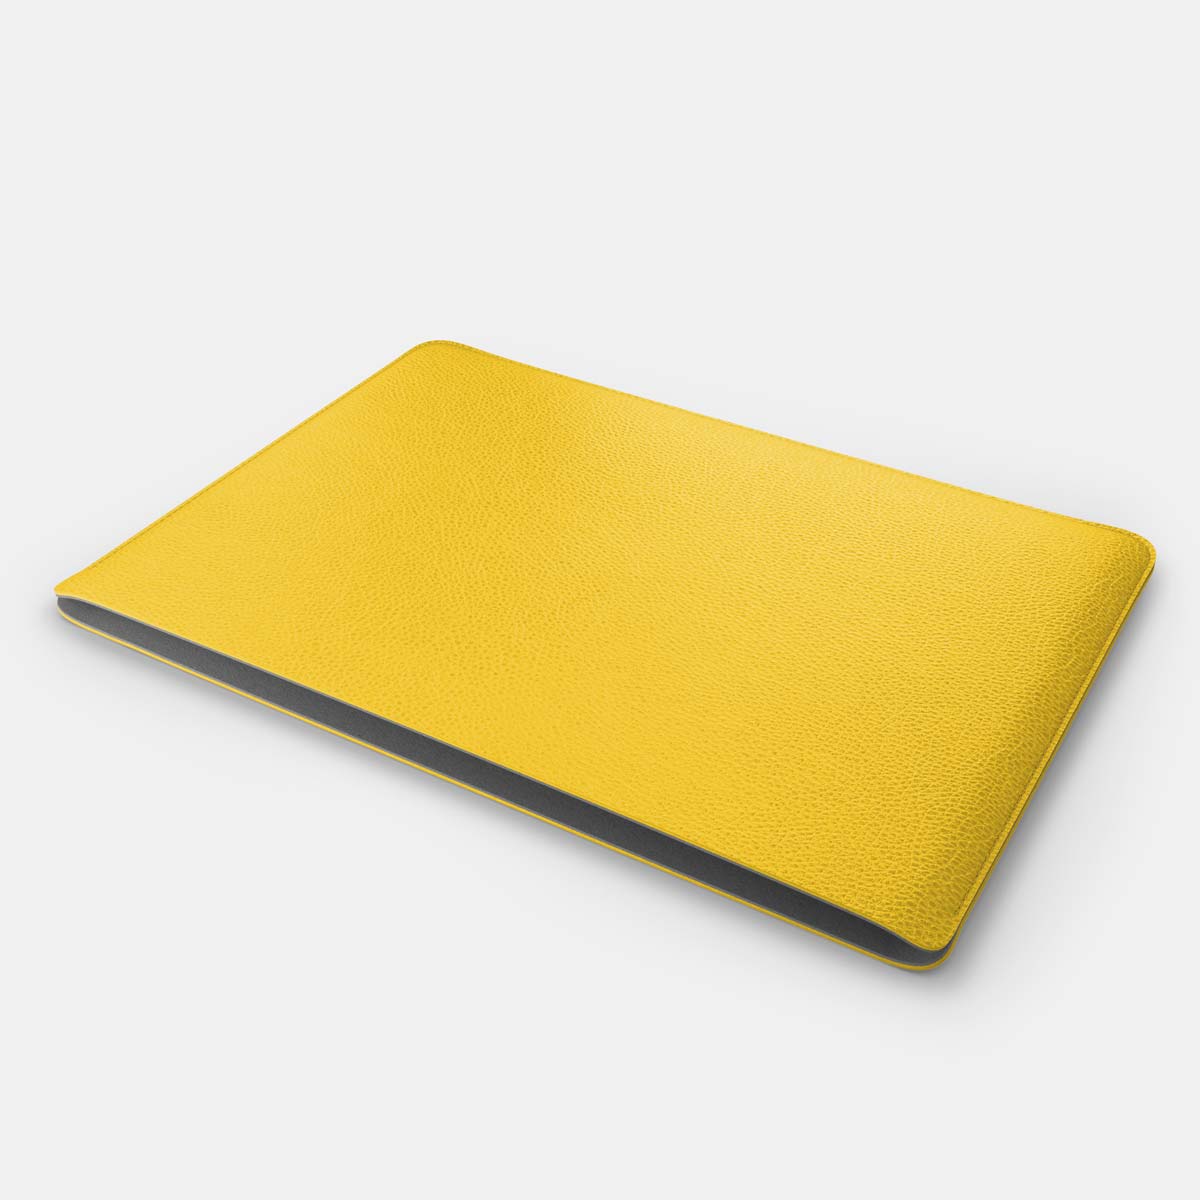 Luxury Leather Macbook Pro 15" Sleeve - Yellow and Grey